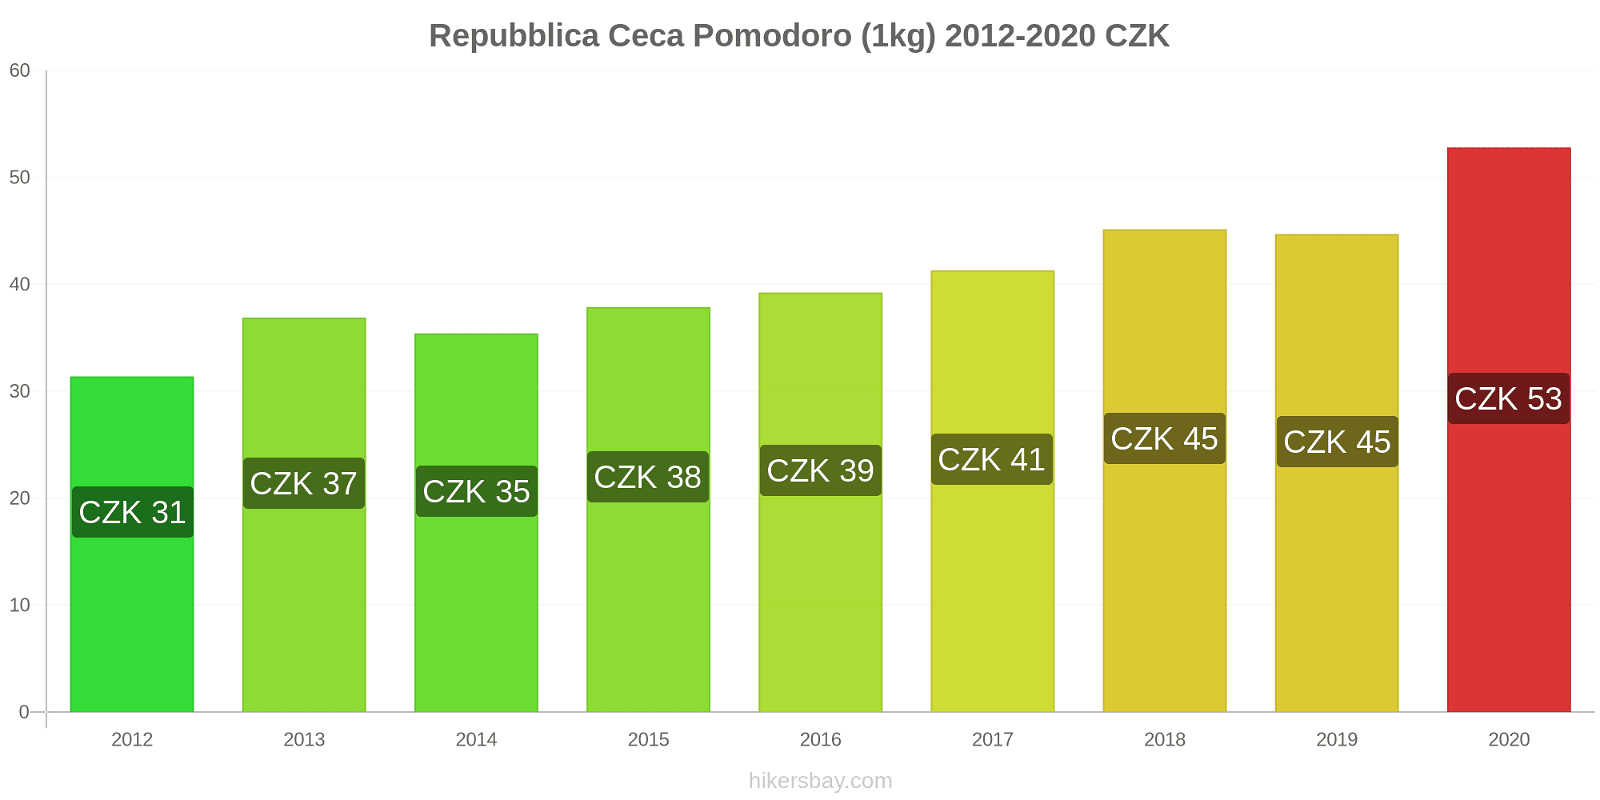 Repubblica Ceca variazioni di prezzo Pomodoro (1kg) hikersbay.com